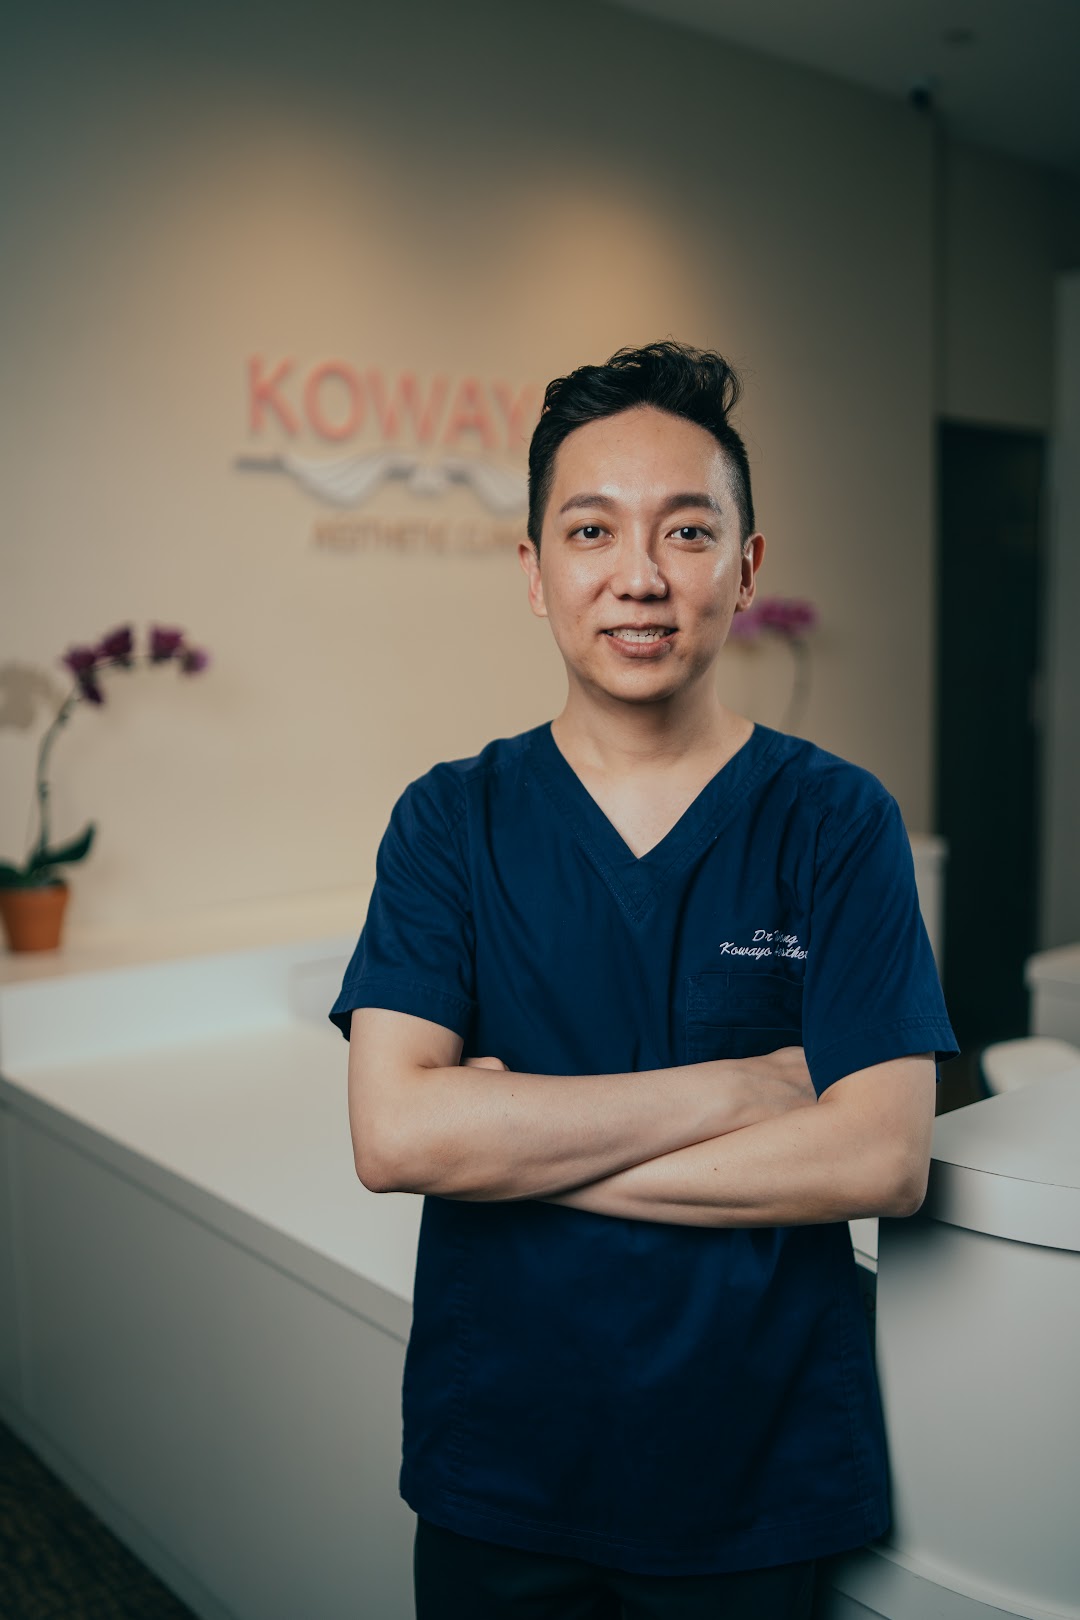 Aesthetic Clinic Singapore - Kowayo Aesthetic Clinic